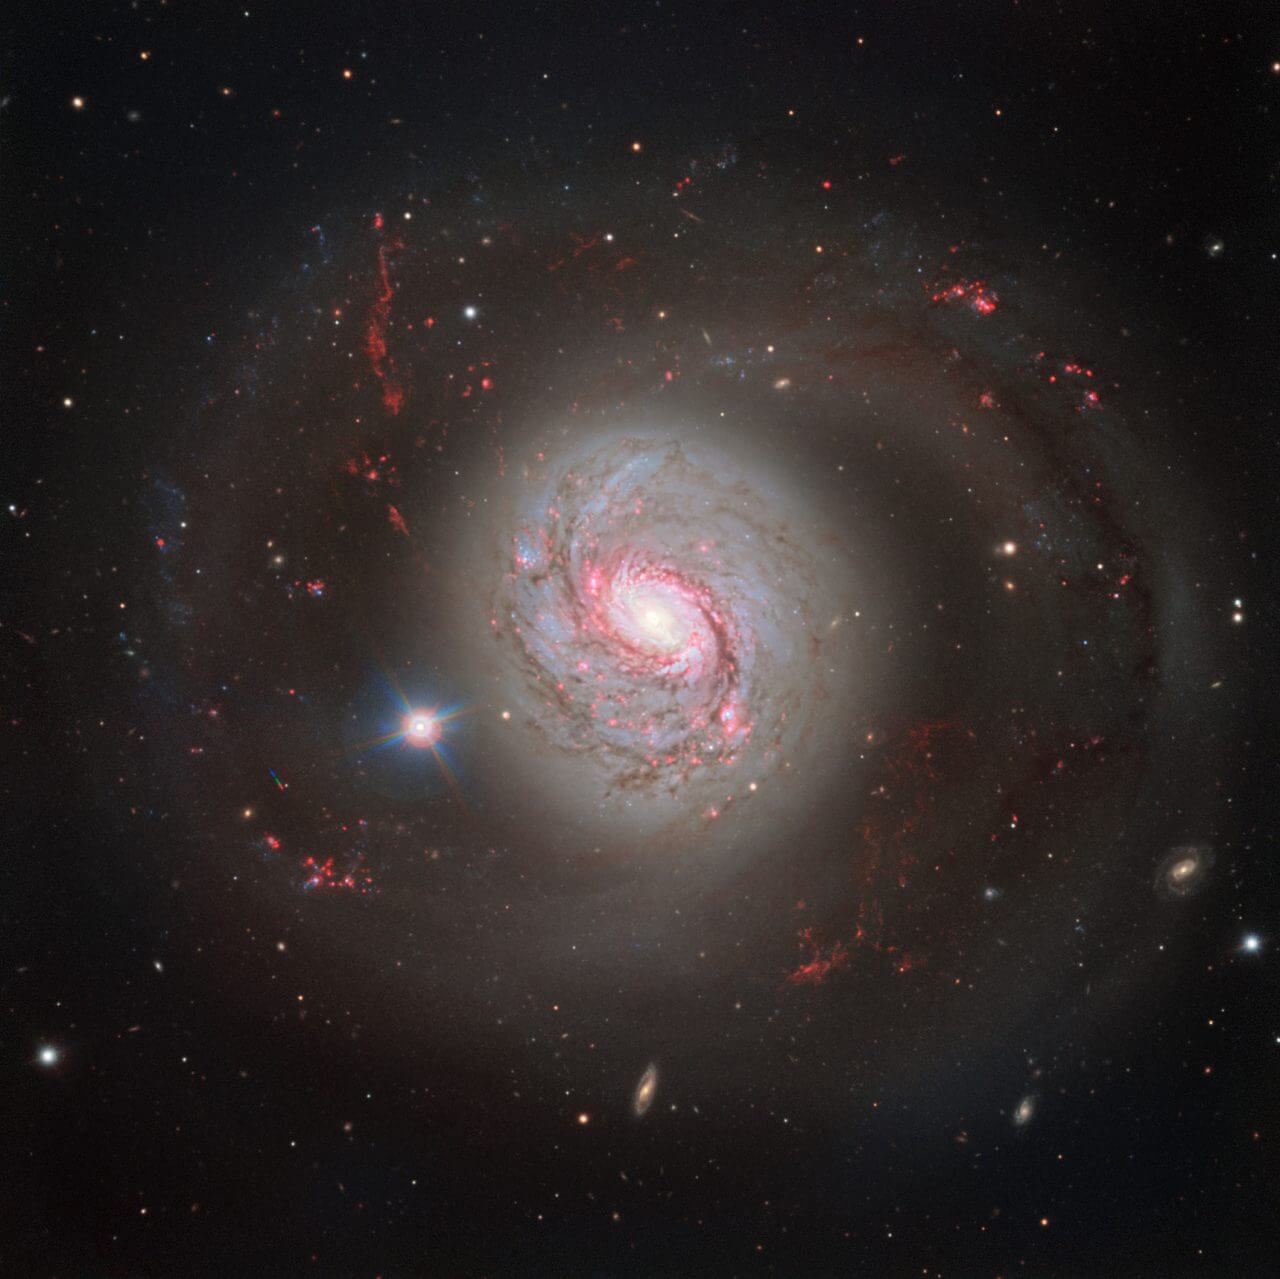 ヨーロッパ南天天文台の超大型望遠鏡（VLT）で撮影された渦巻銀河「M77」